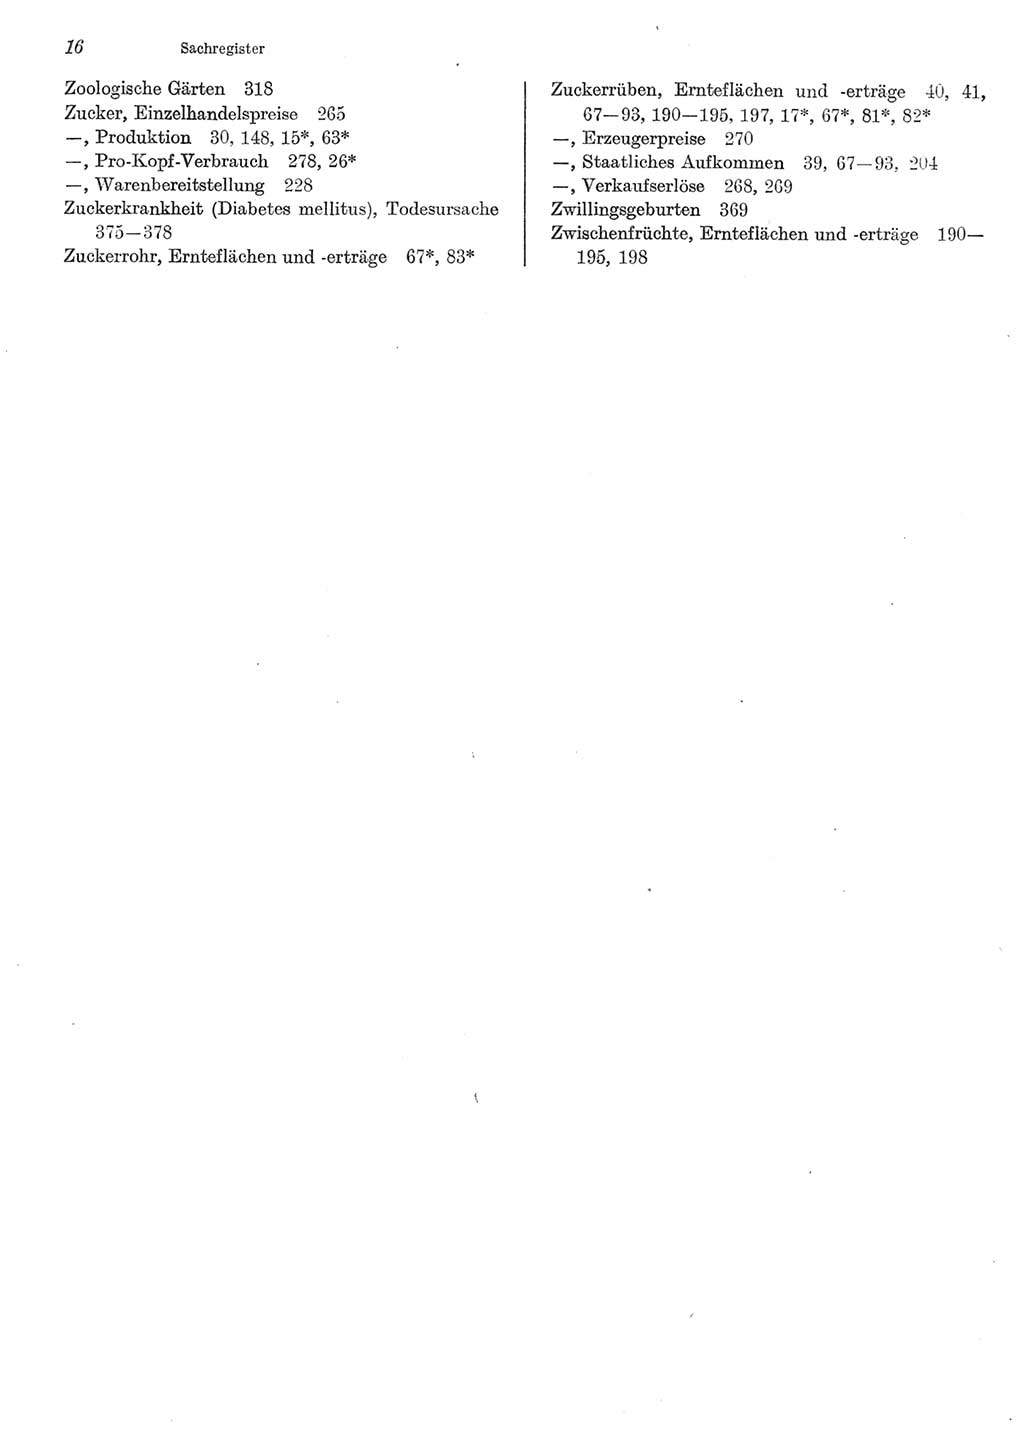 Statistisches Jahrbuch der Deutschen Demokratischen Republik (DDR) 1983, Seite 16 (Stat. Jb. DDR 1983, S. 16)